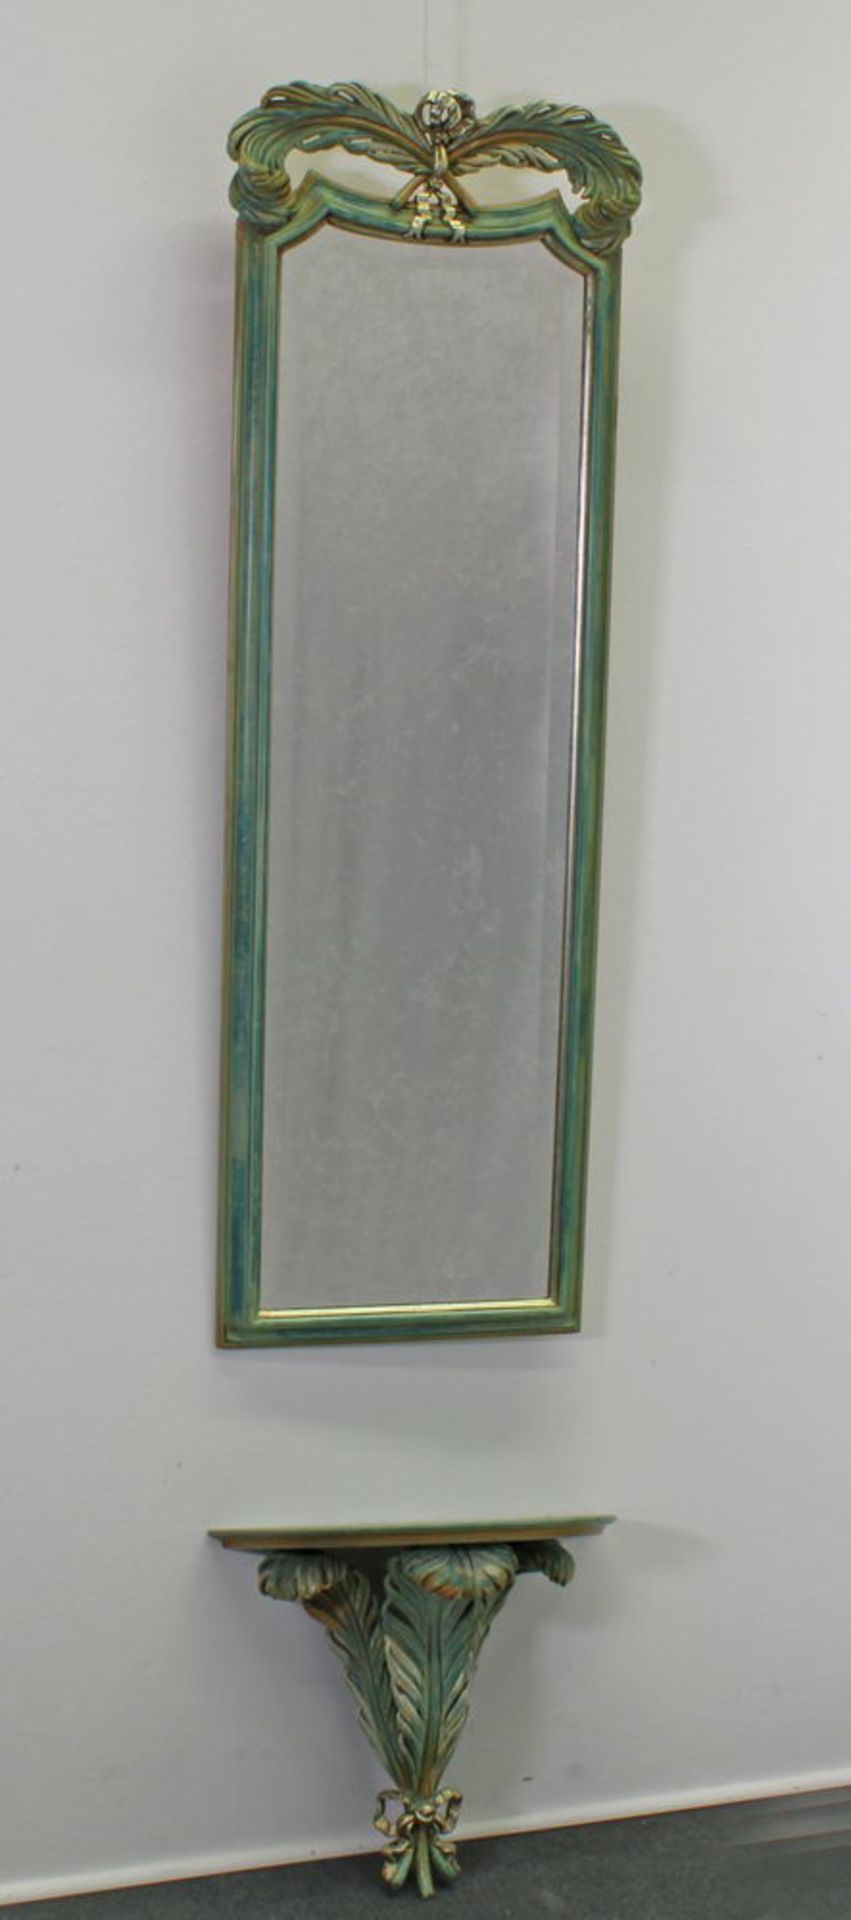 Wandspiegel mit Wandkonsole, 20. Jh., Holz, grüngold gefasst, facettiertes Spiegelglas, Spiegel 12